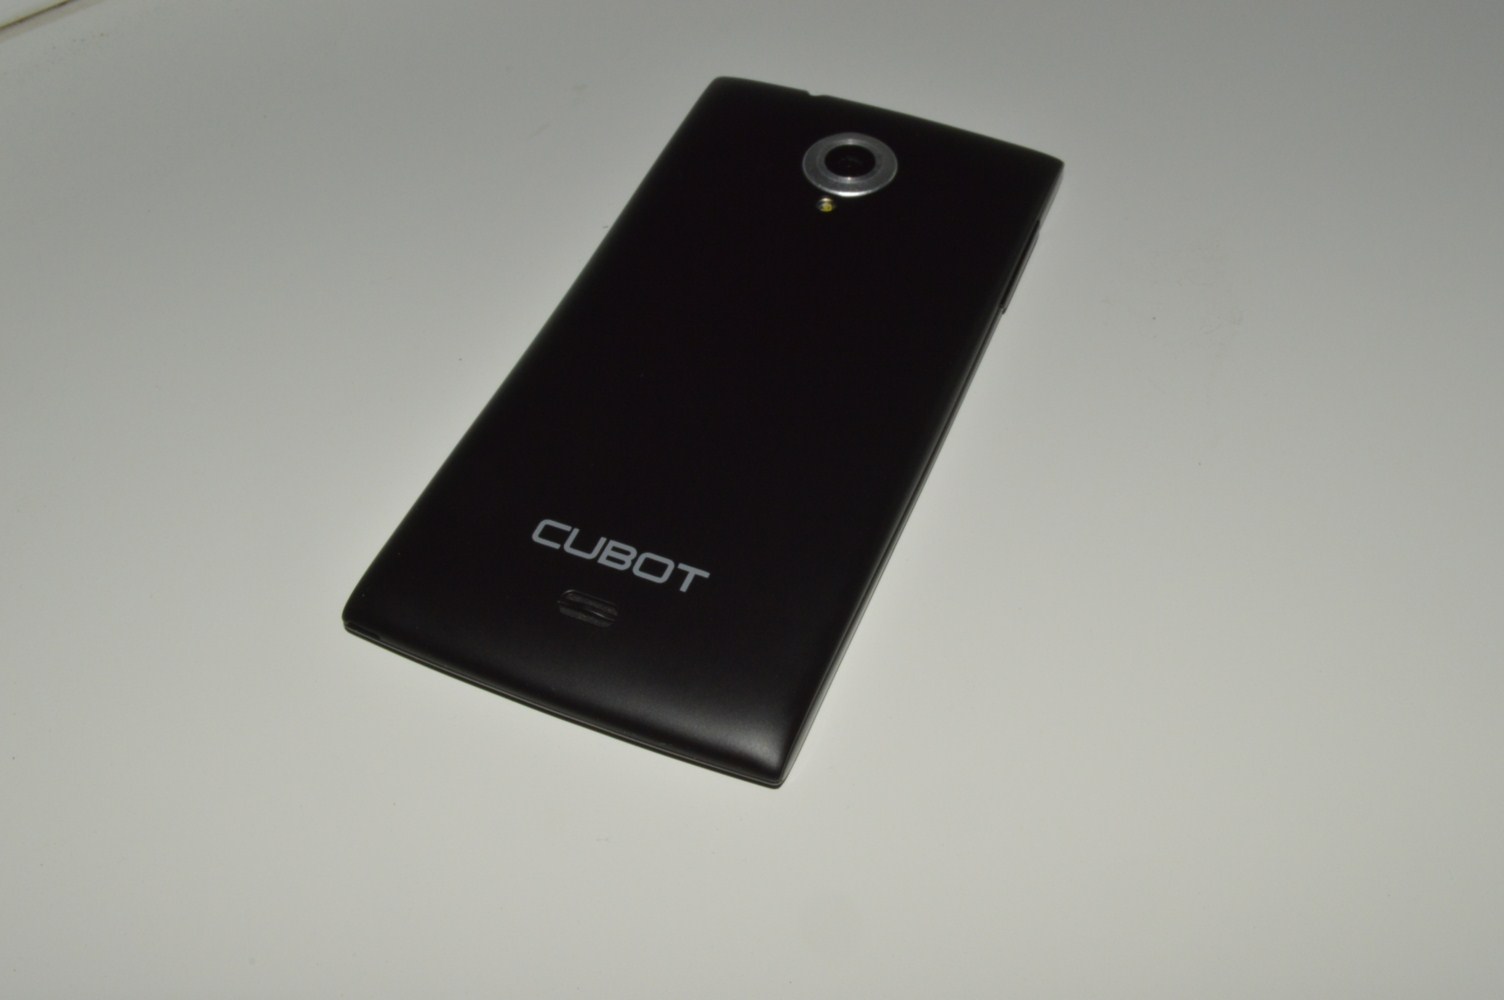  Обзор смартфона Cubot X6 